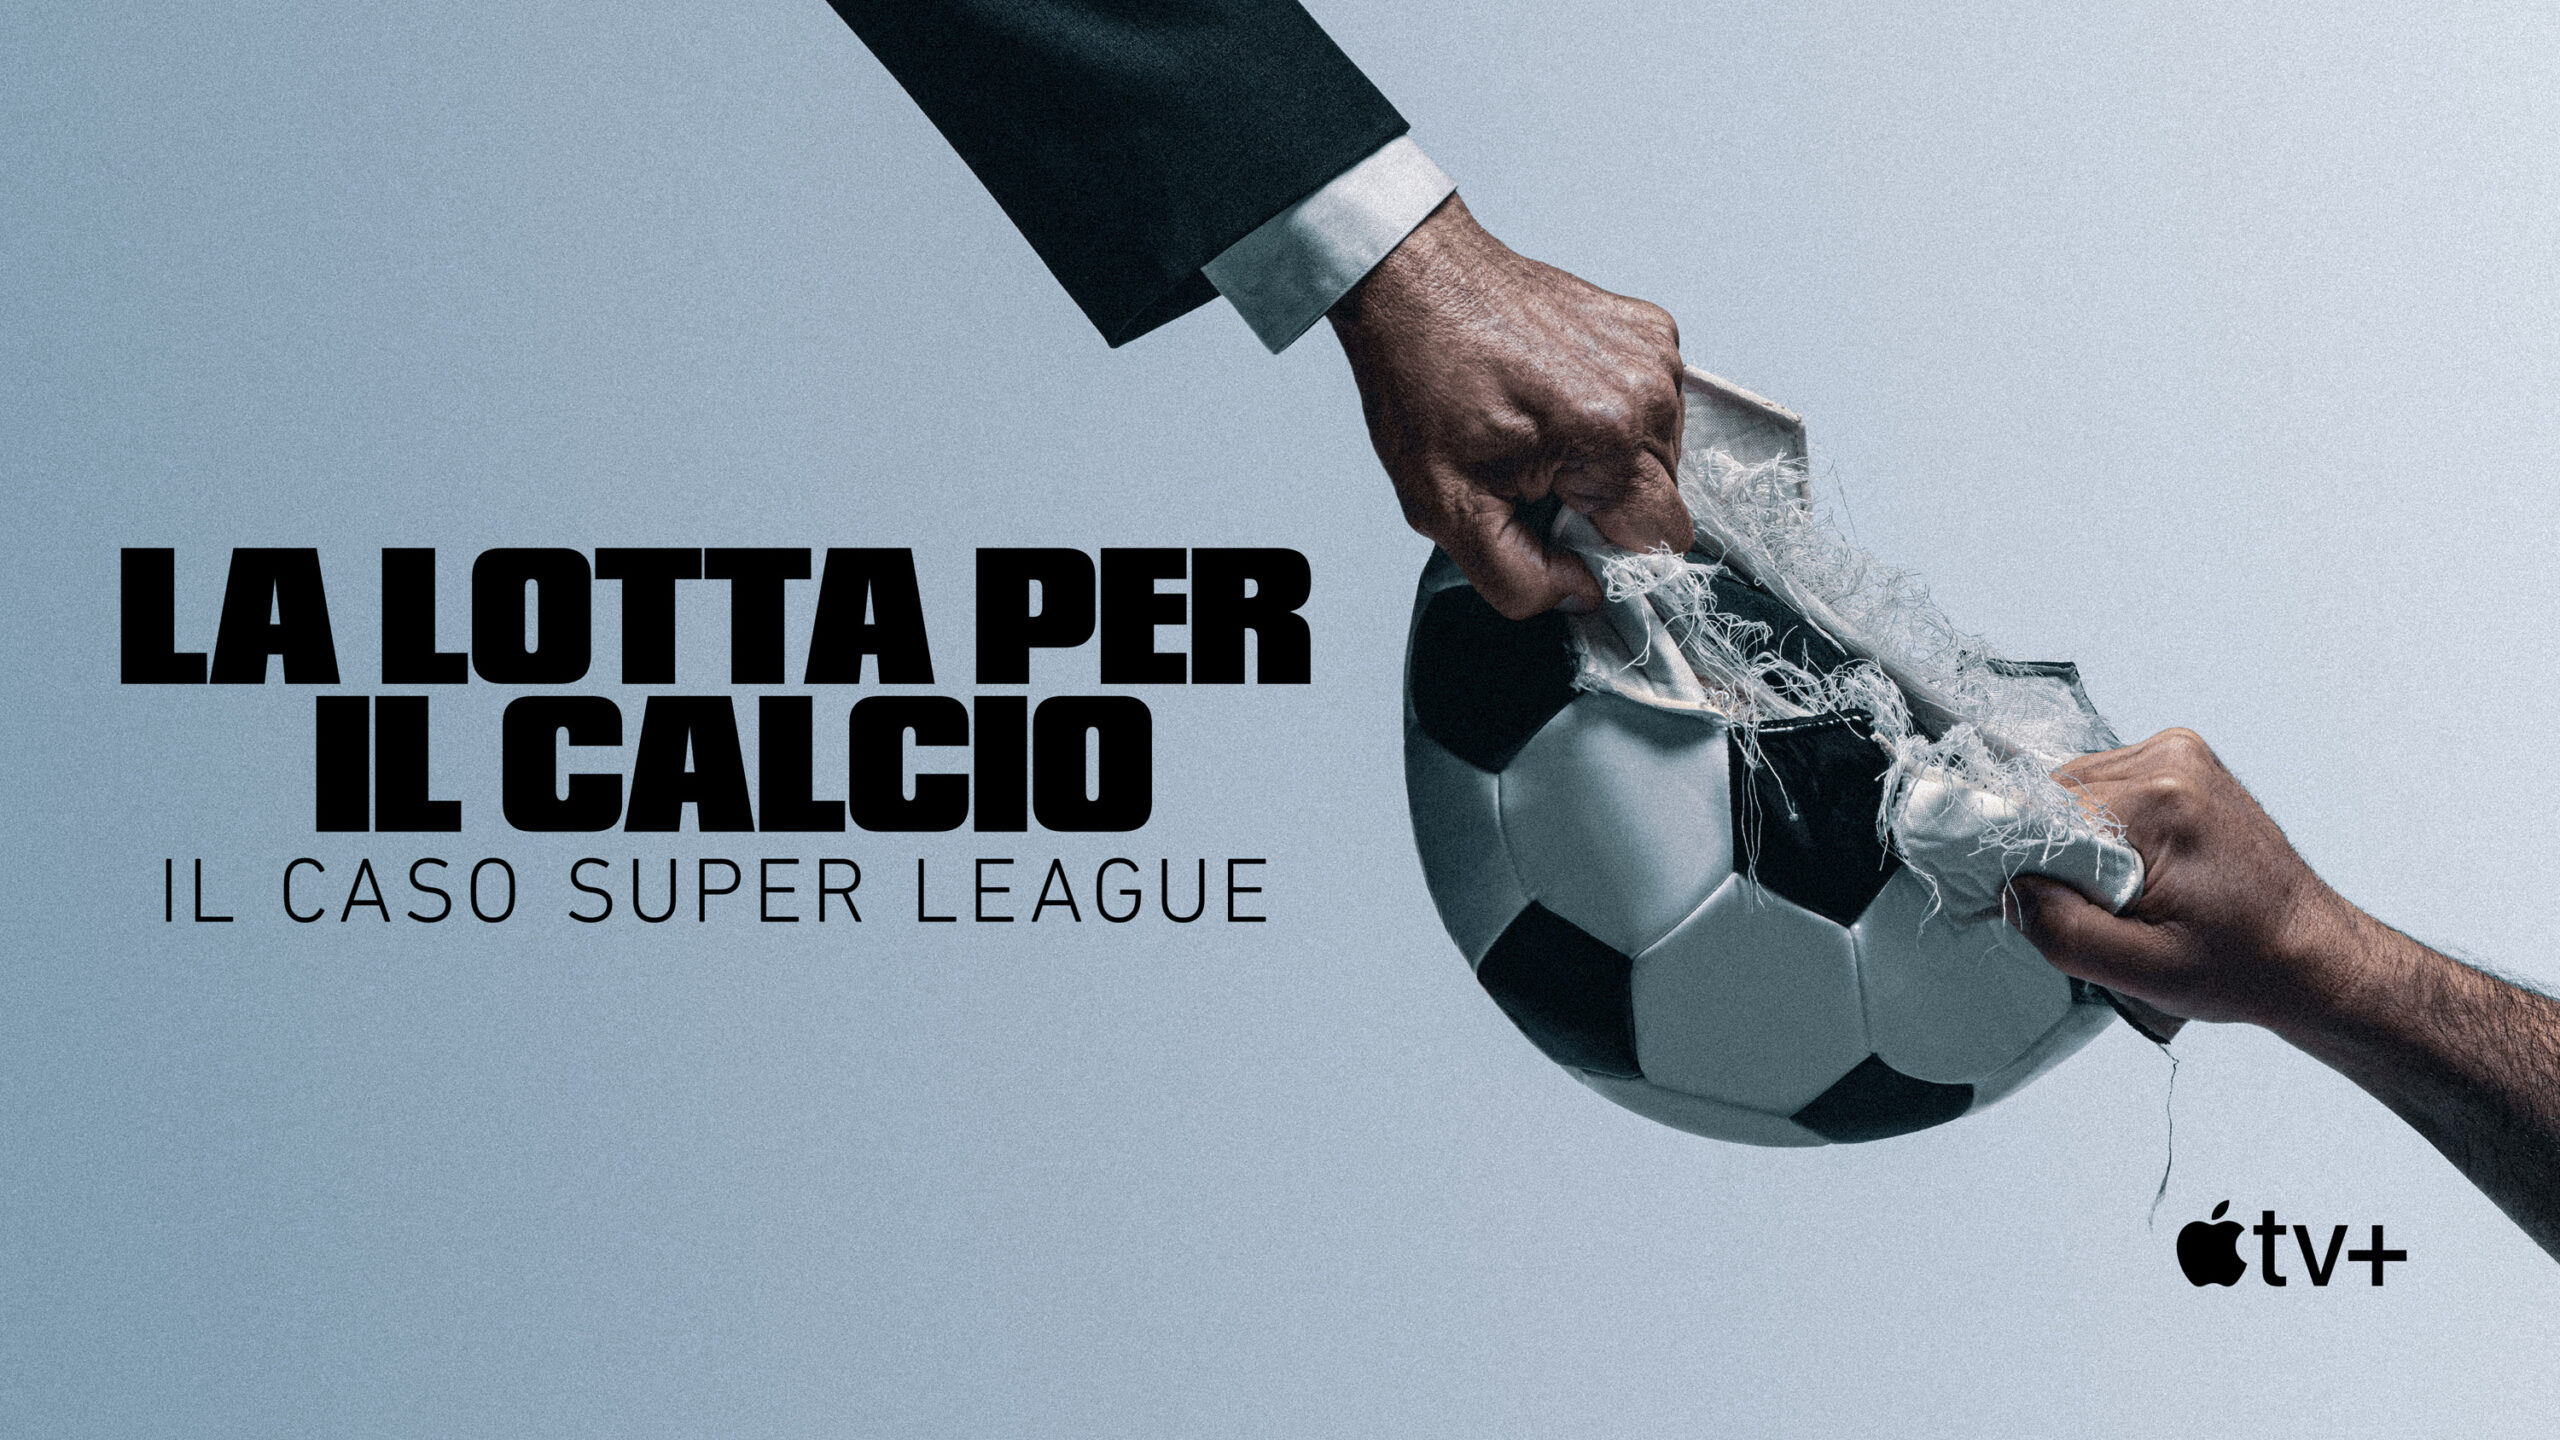 La lotta per il calcio - Il caso Super League - Poster